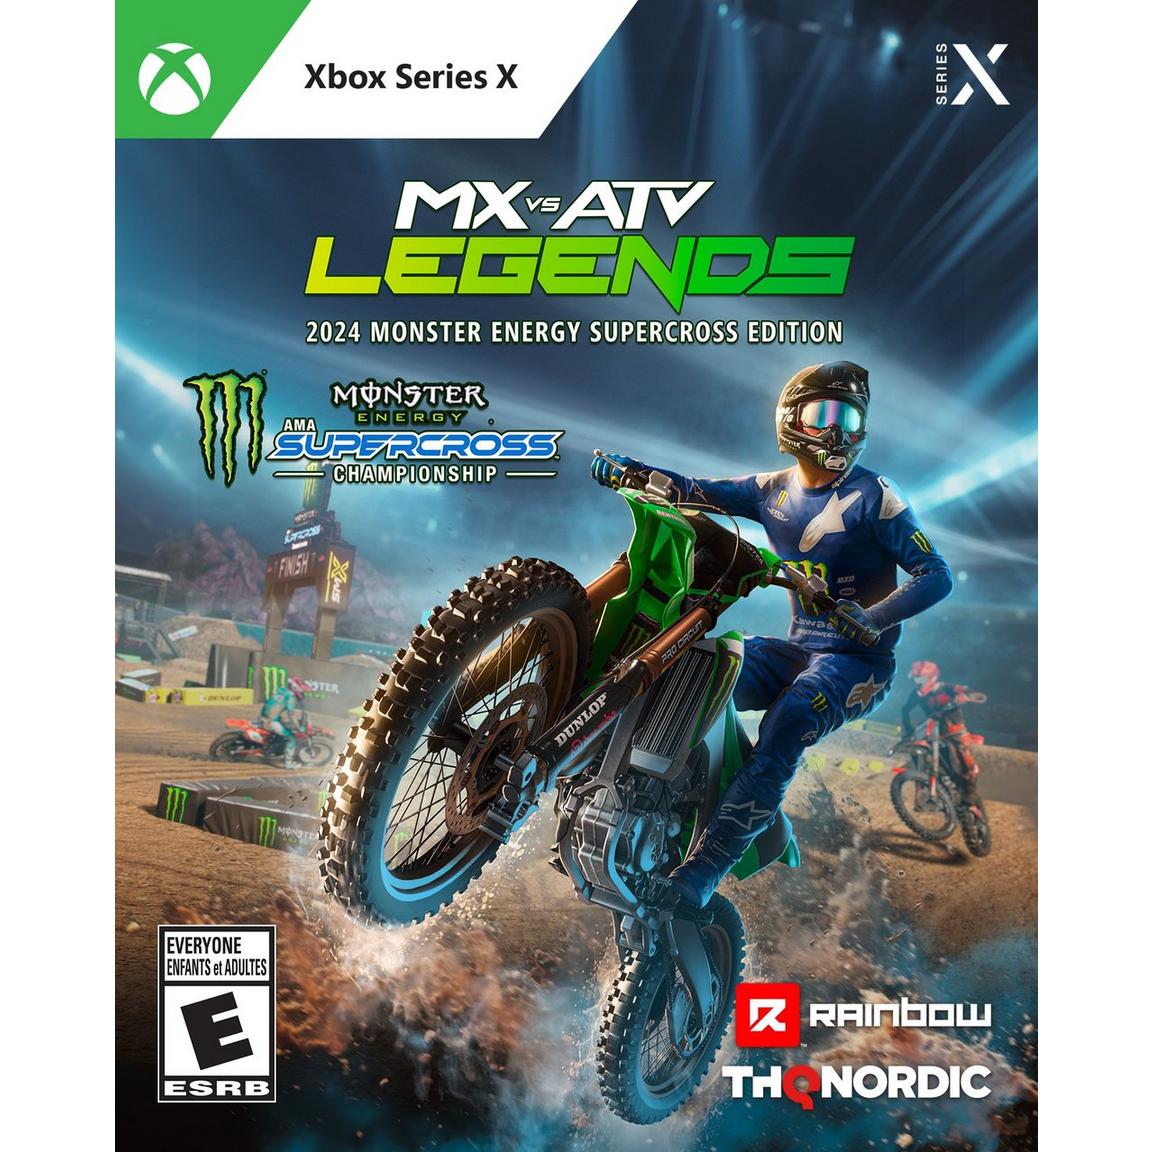 Видеоигра MX vs ATV Legends - 2024 Monster Energy Supercross Edition - Xbox Series X nicecnc atv front